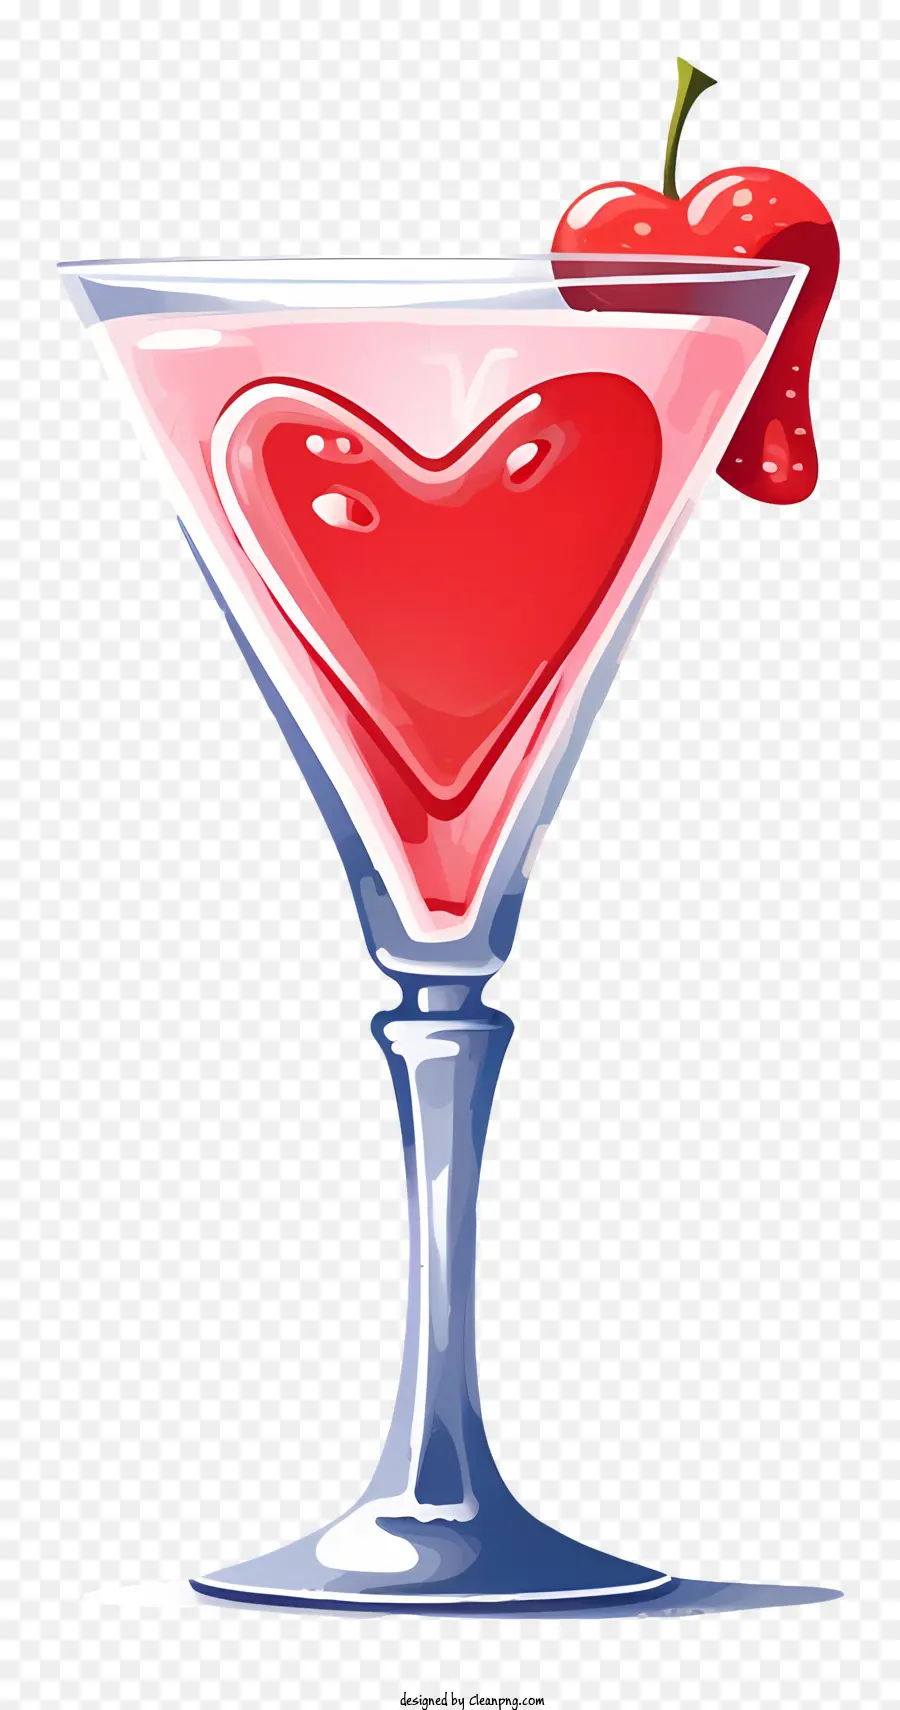 thực tế ngày lễ tình nhân cocktail đỏ trái tim đỏ anh đào martini thủy tinh bằng kính màu đen nền đen - Anh đào hình trái tim trong kính trên nền đen